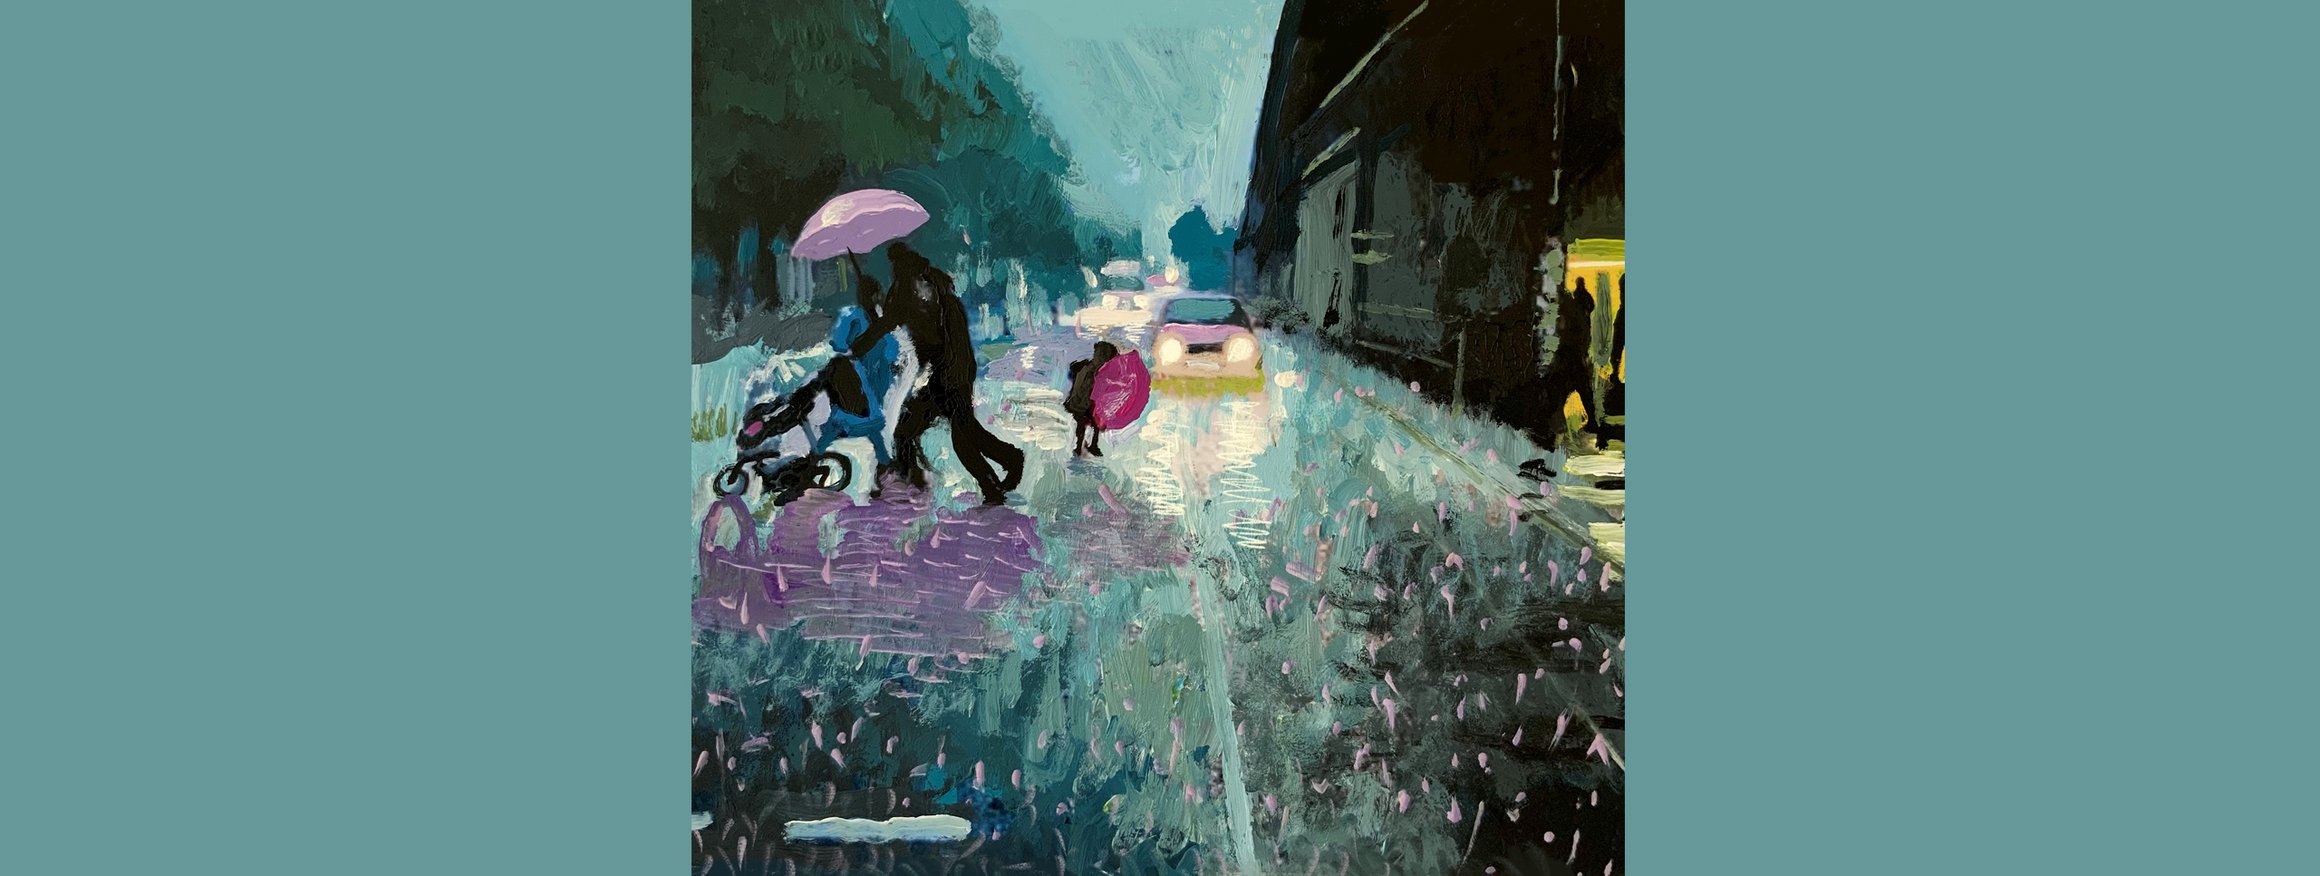 Die Illustration zeigt eine Straßenszene bei düsterem Regenwetter mit Fußgängern, Kinderwagen, Autos und Regenschirmen